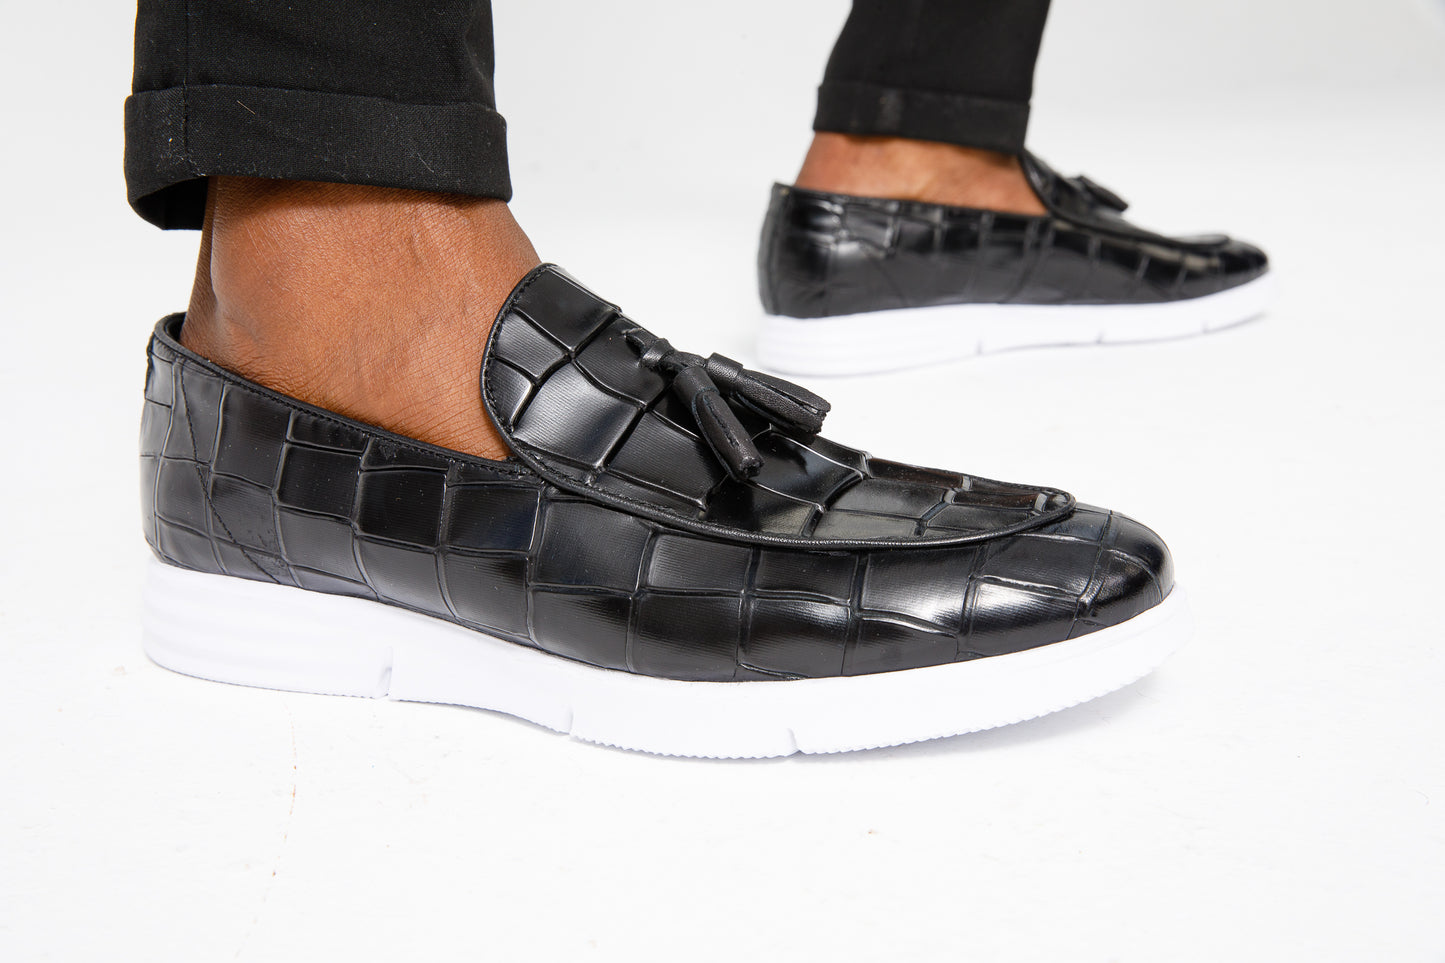 The Parga Black Leather Tassel Casual Loafer Men Shoe